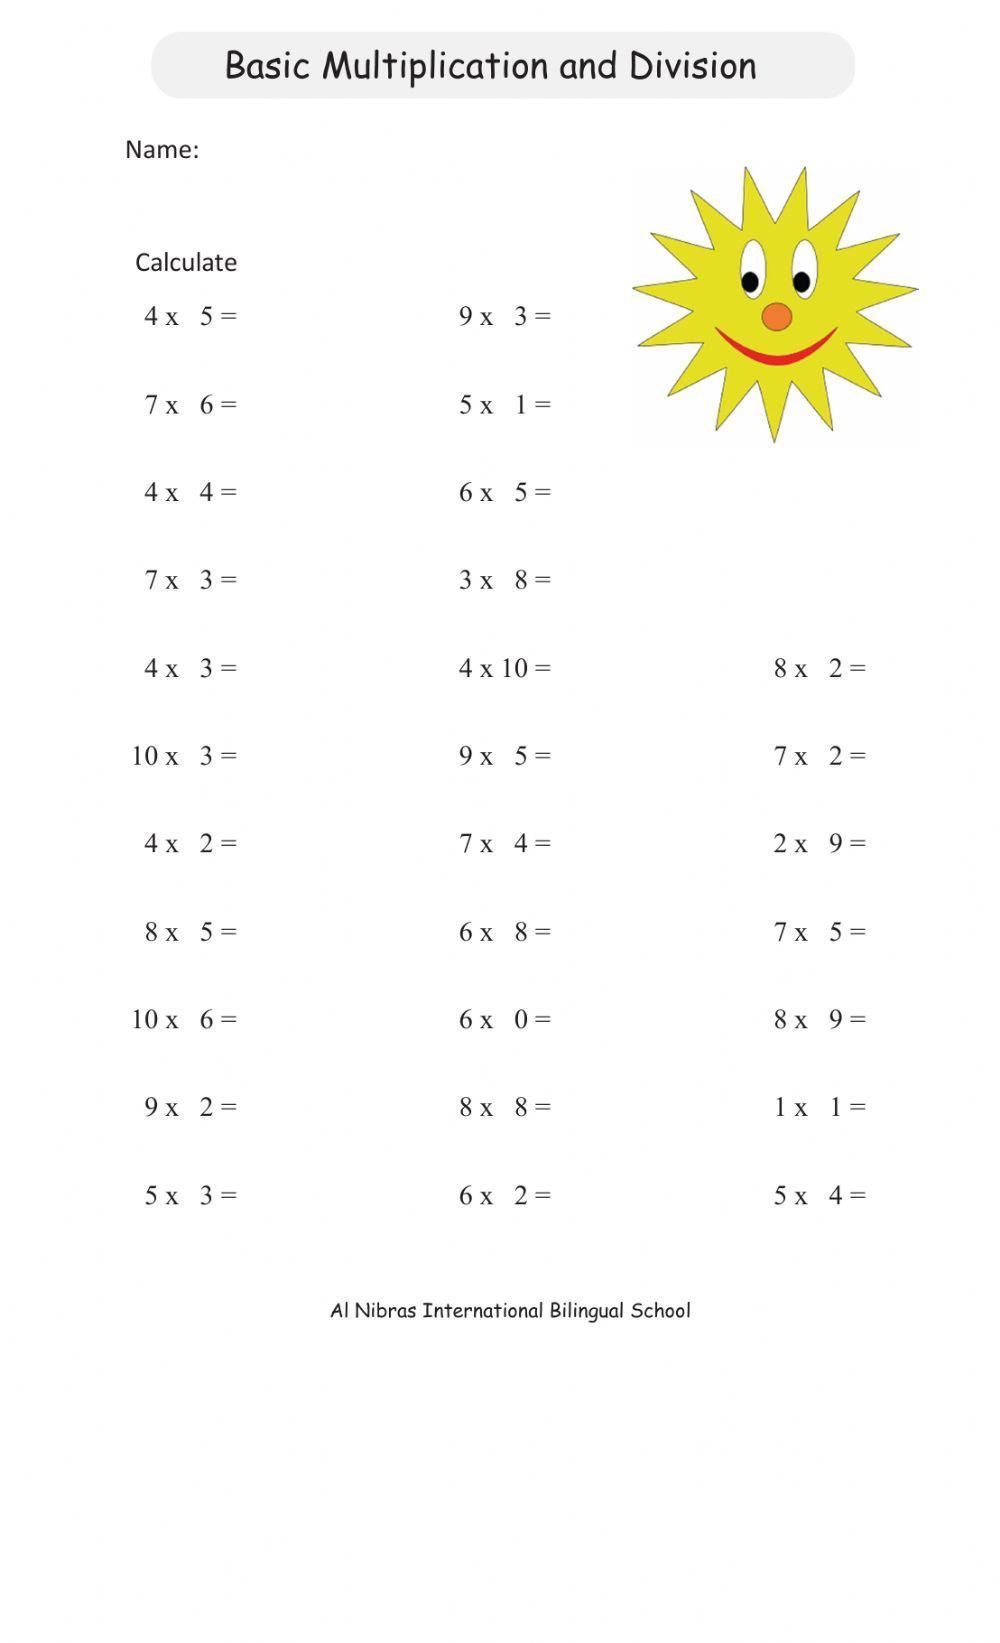 Division And Multiplication Facts Worksheets Divisonworksheets